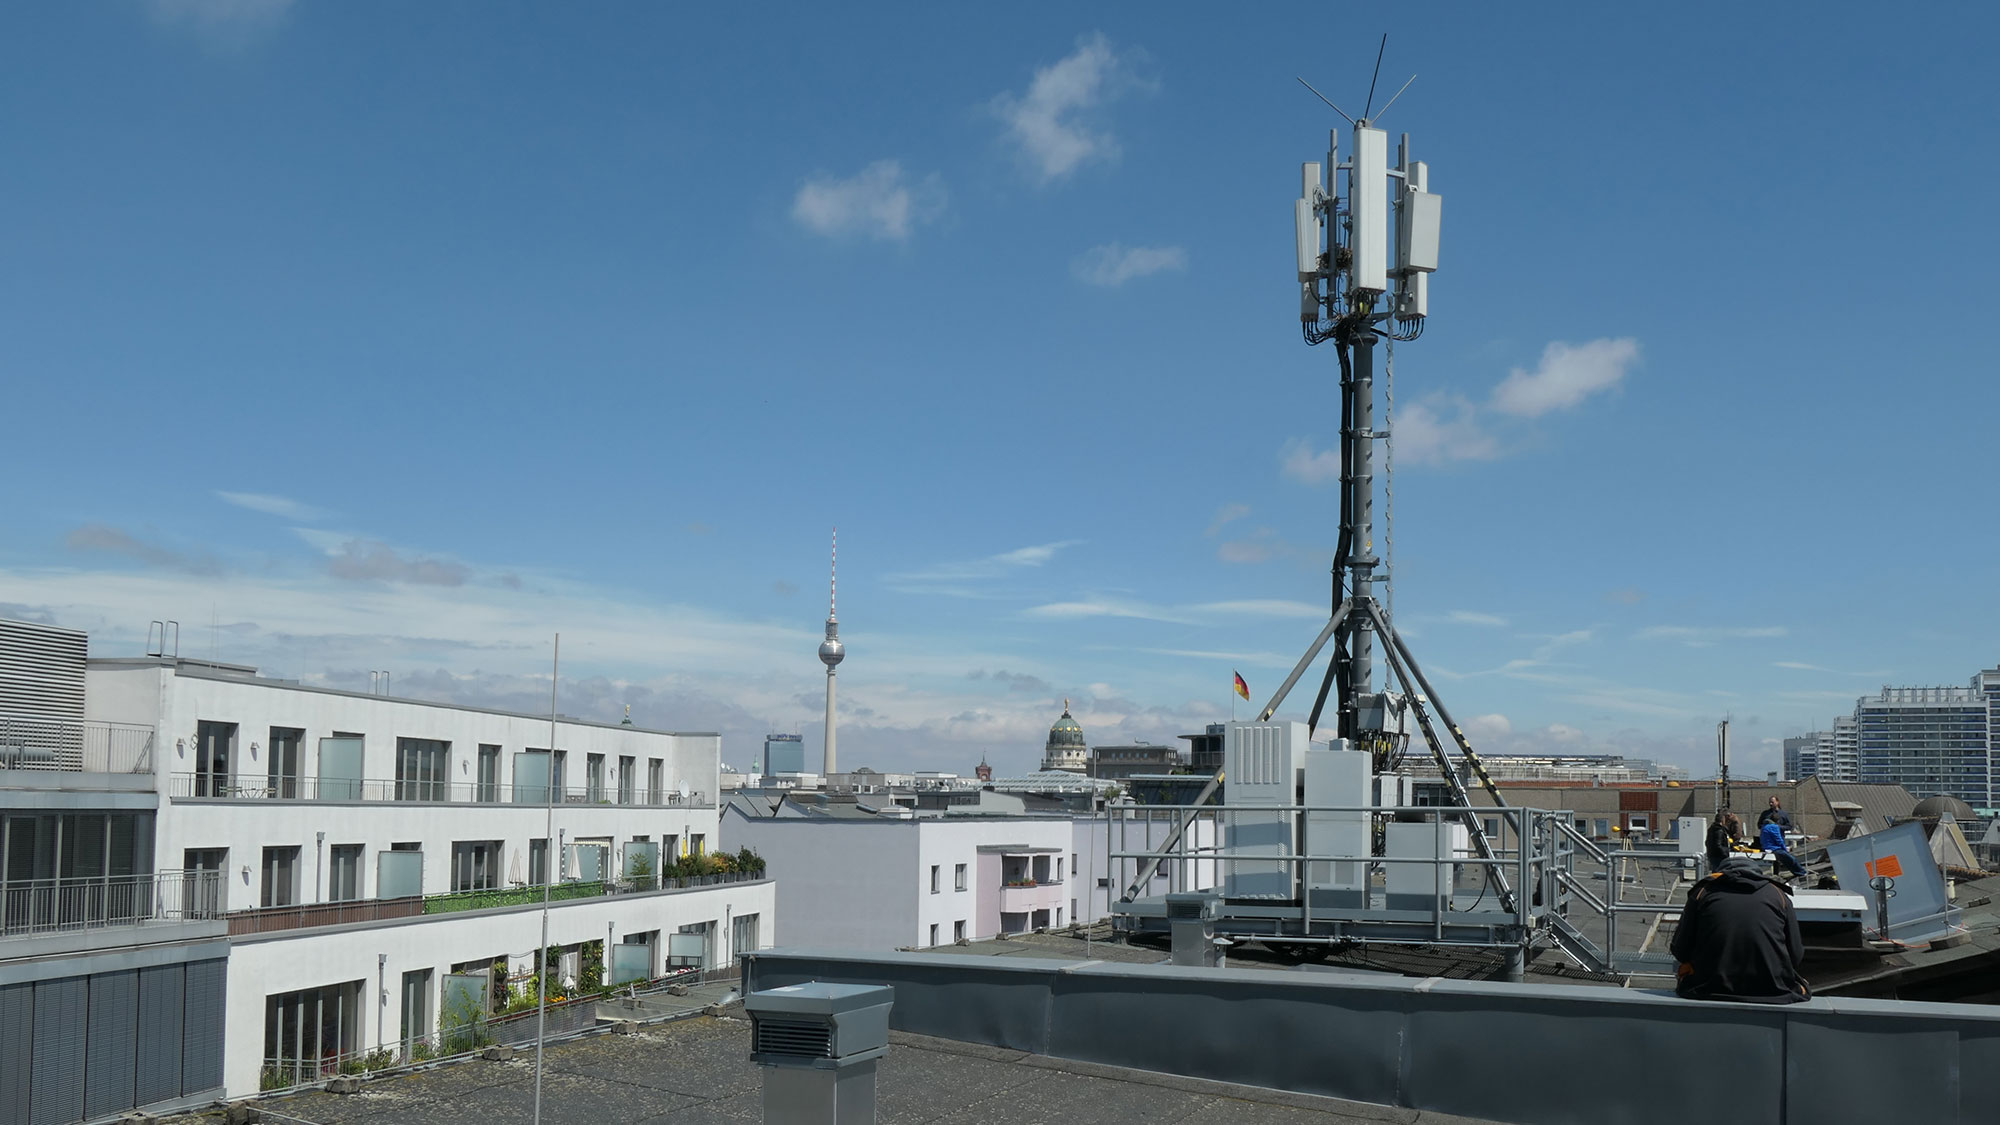 Mobilfunkmast ragt in den blauen Himmel über den Dächern von Berlin.